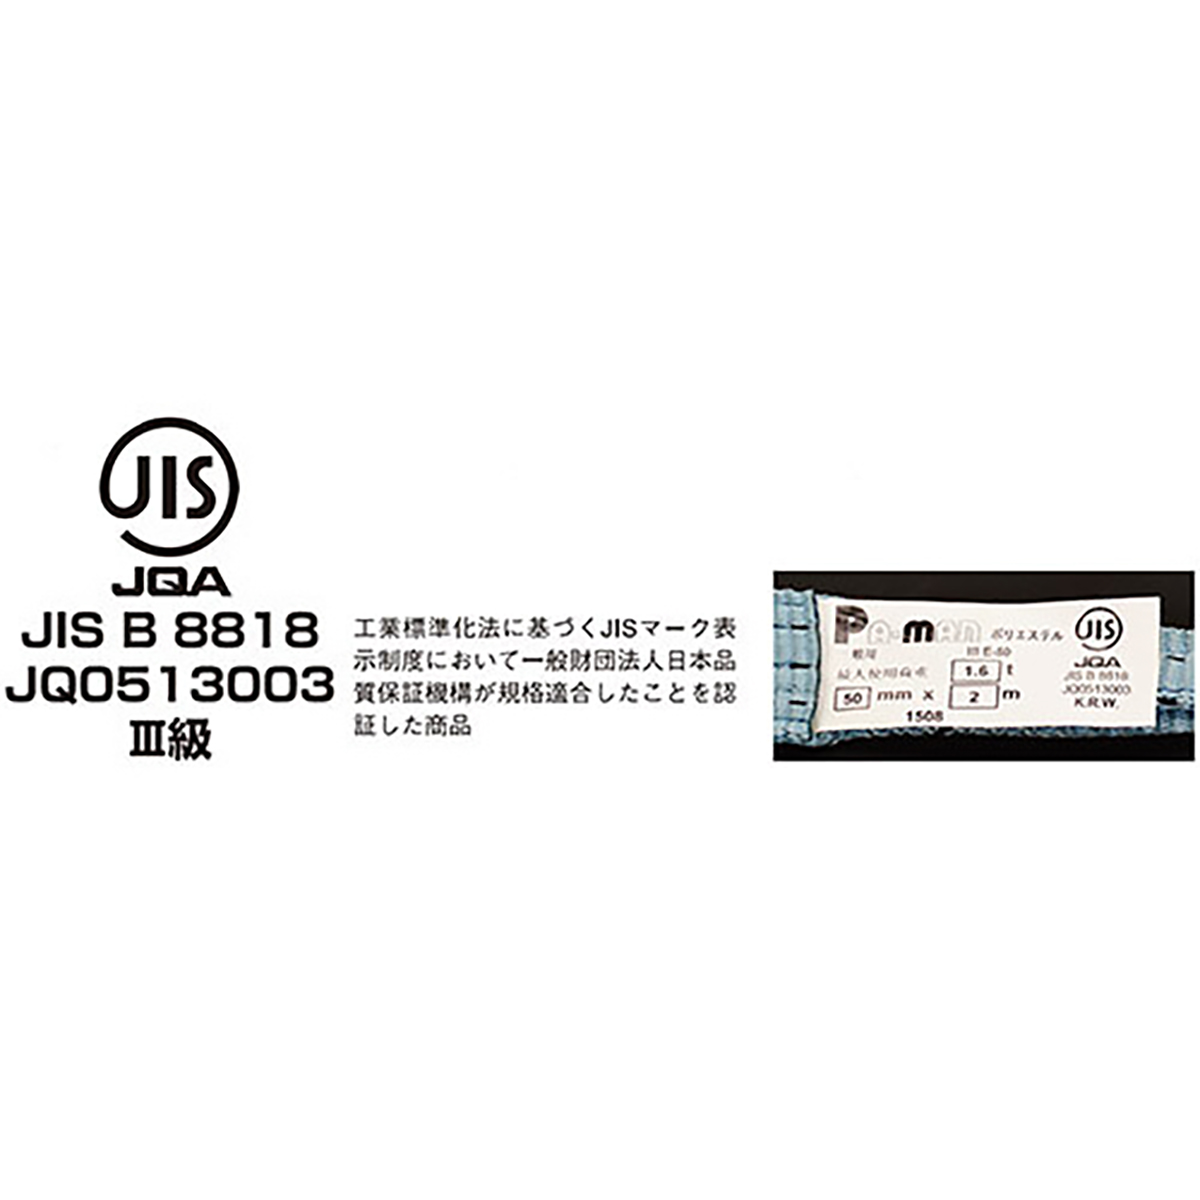 ポリベルトスリング JIS III級 ソフト面付 巾35mm 5m 1本